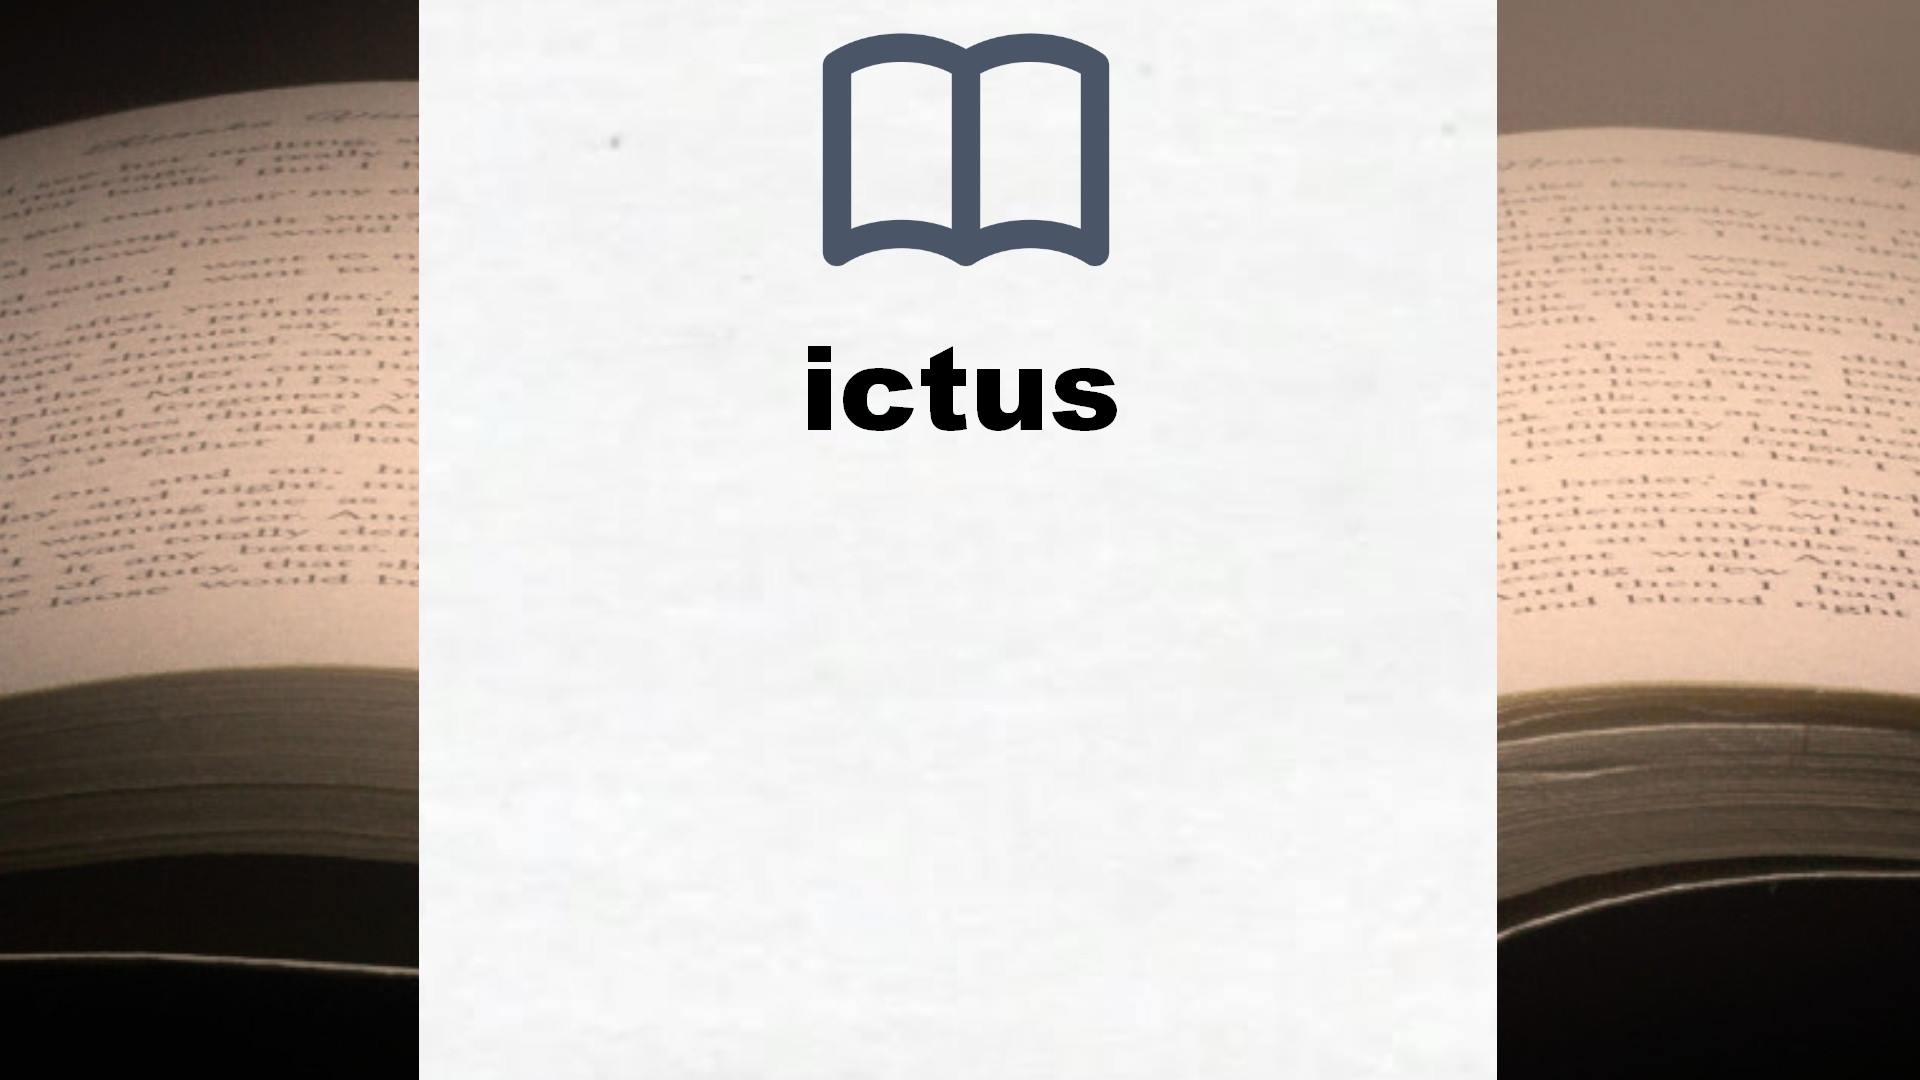 Libros sobre ictus